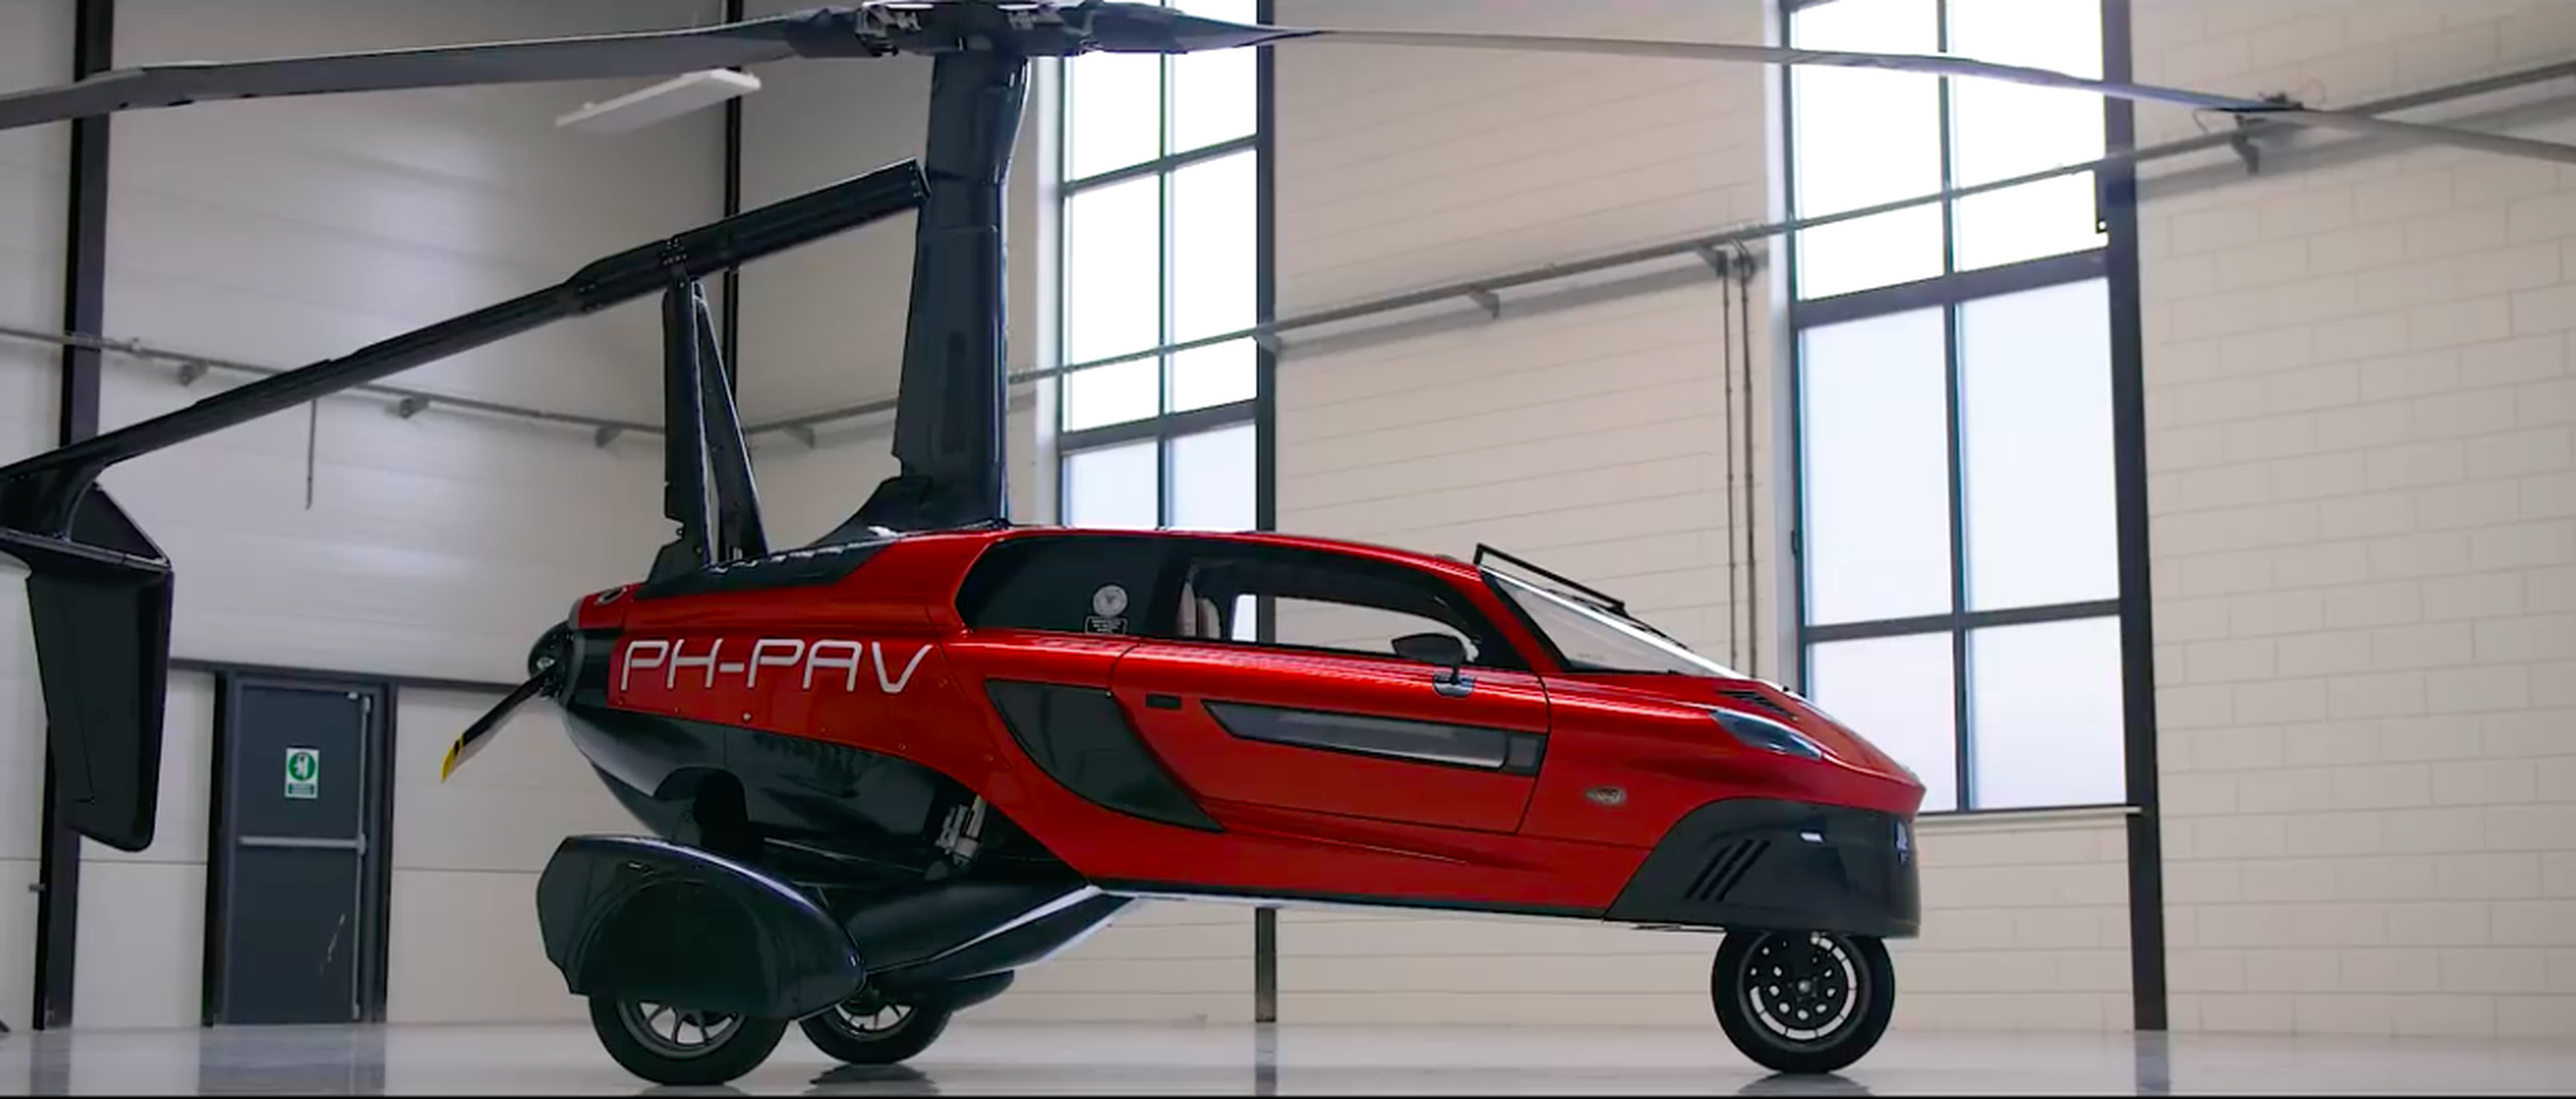 VÍDEO: Este es el coche volador que ya te puedes comprar en España